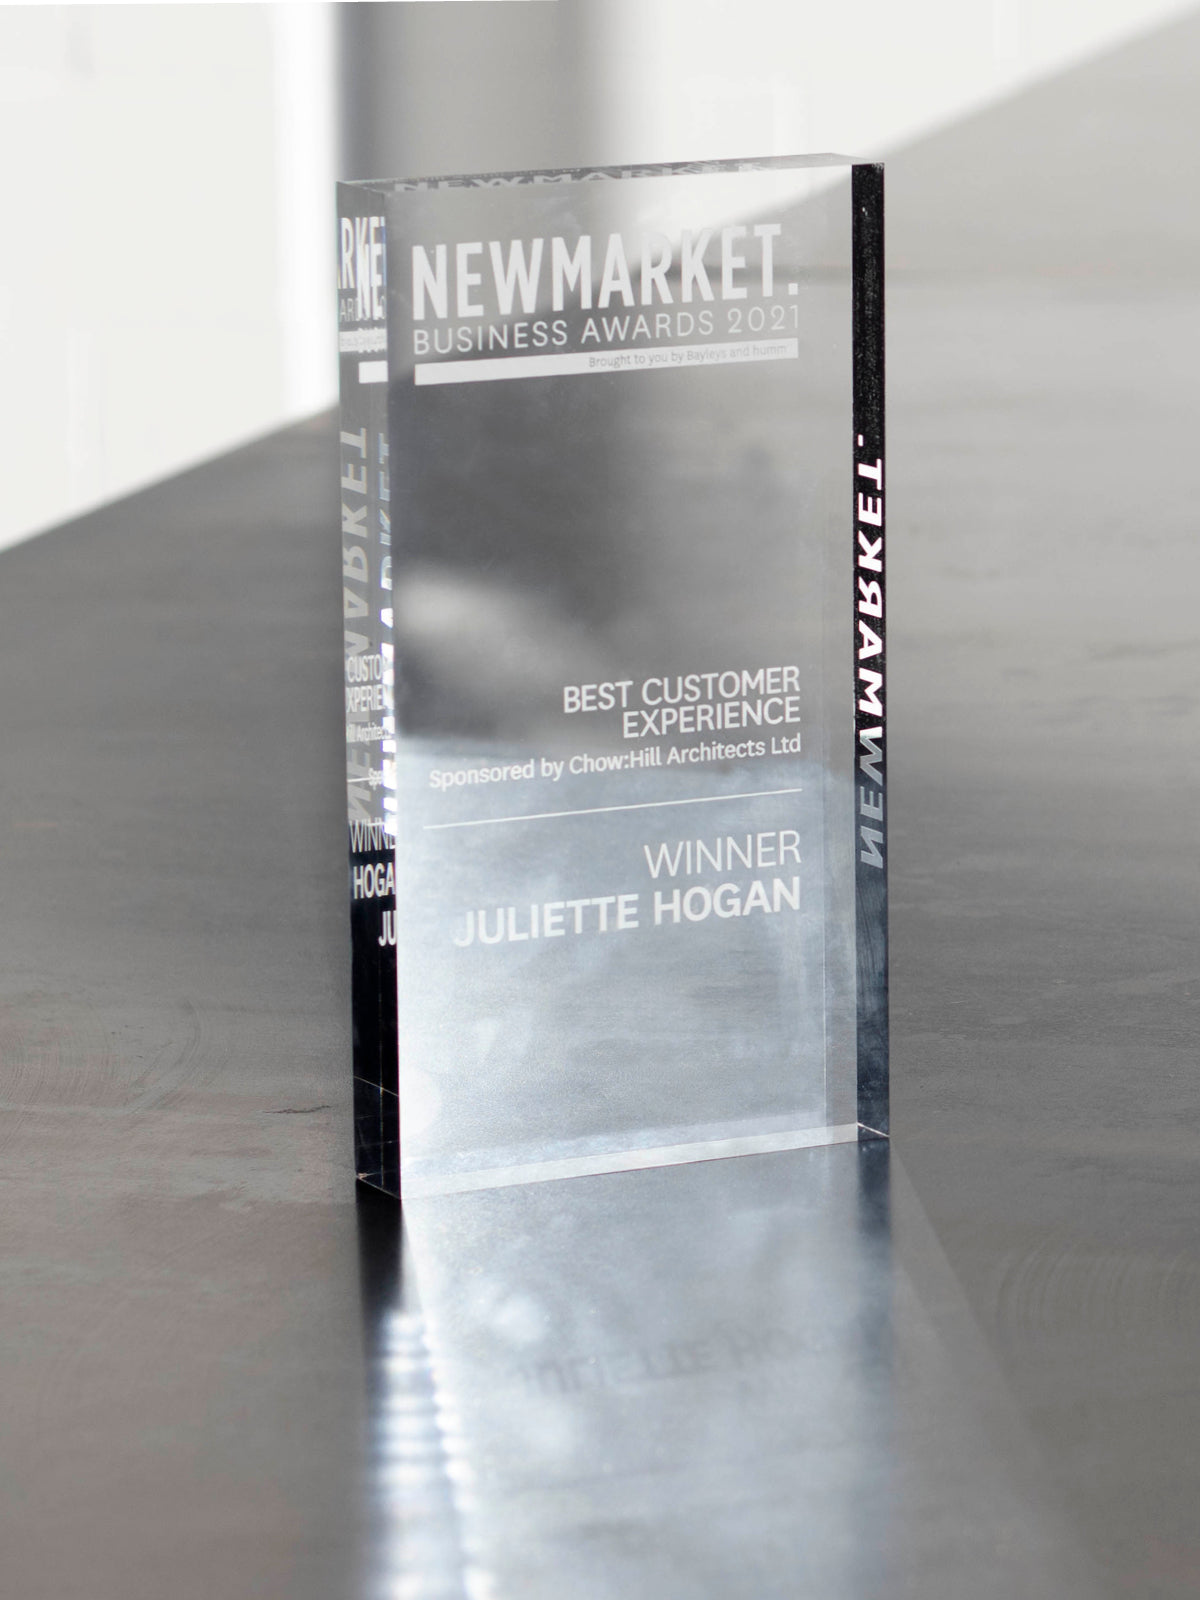 From Juliette / Newmarket Business Awards